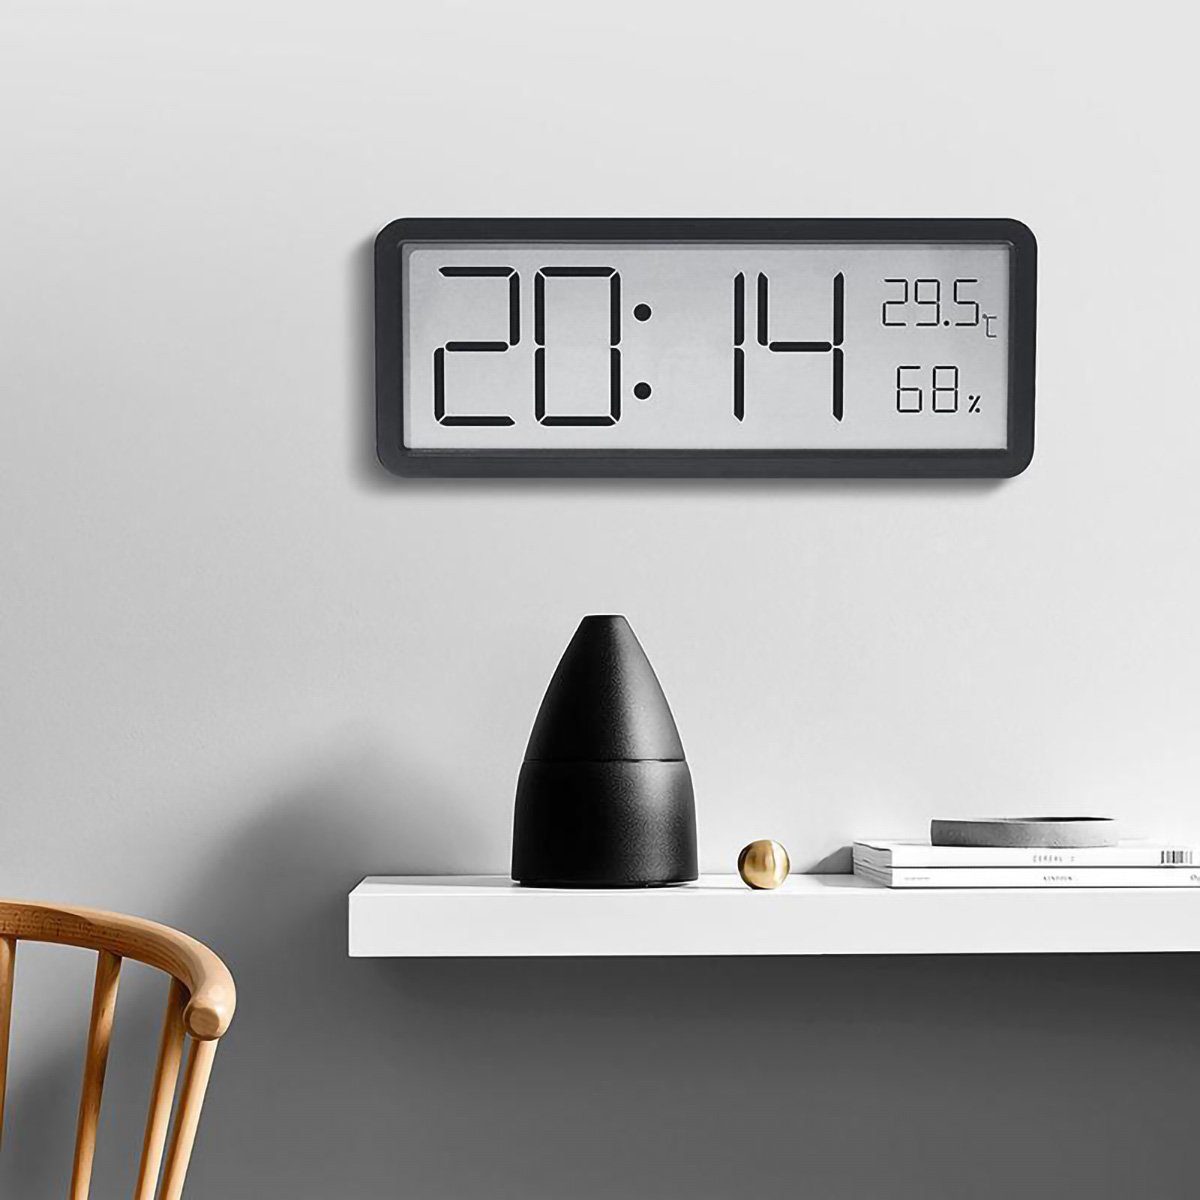 yozhiqu Pendelwanduhr Einfache Großbilduhr, Wohnzimmer-Wanduhr, kreative moderne Uhr (Temperatur- und Luftfeuchtigkeitsuhr, kann aufgehängt oder aufgestellt)